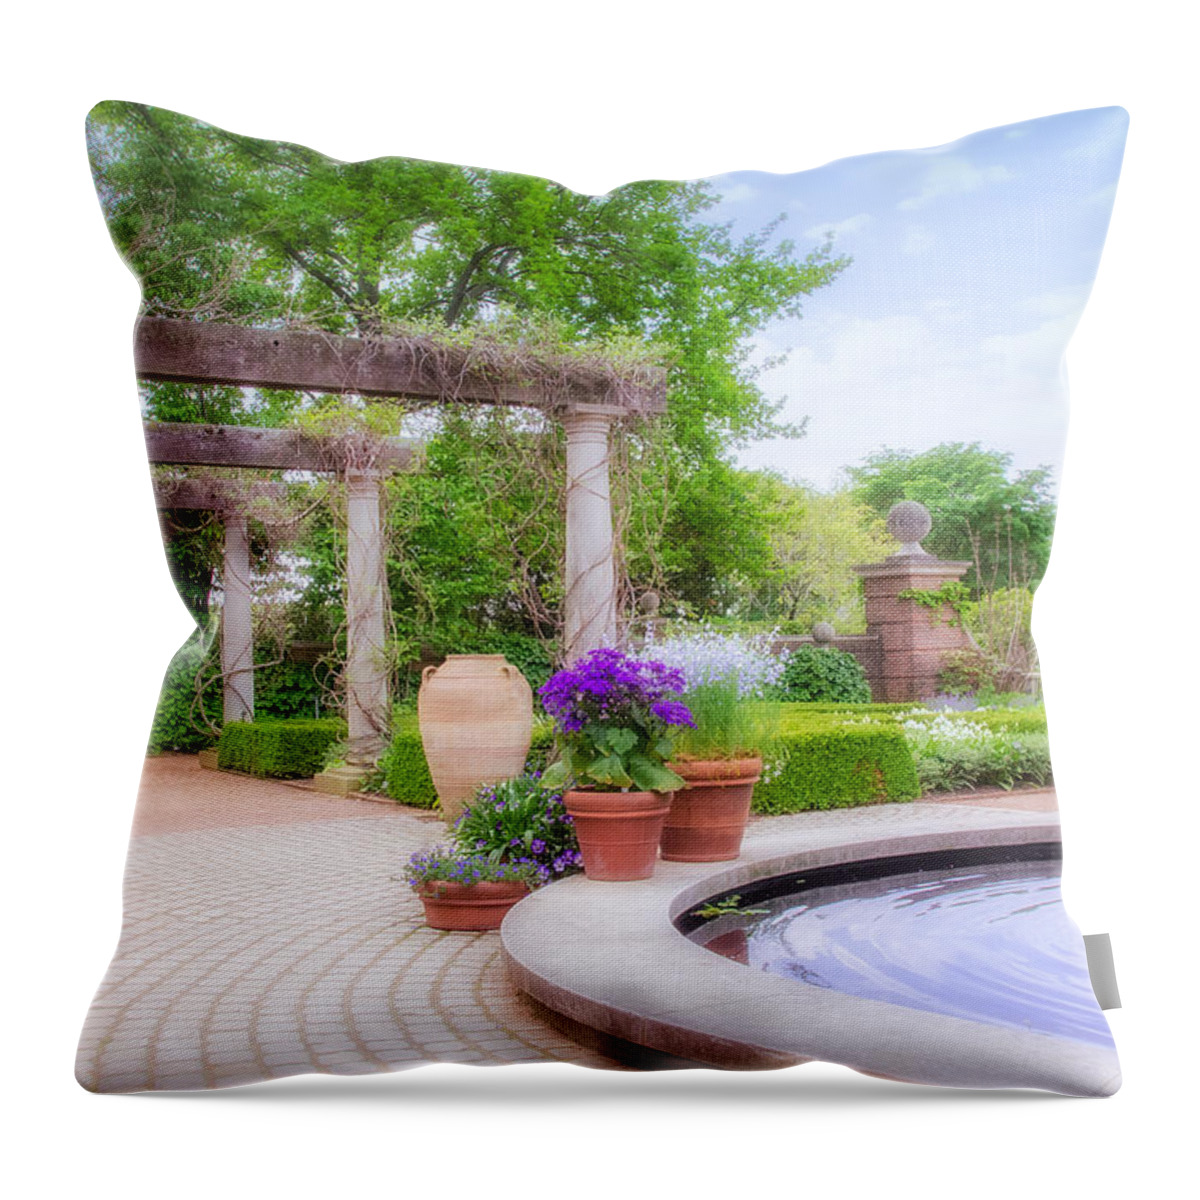 Garden Throw Pillow featuring the photograph English Garden #1 by Julie Palencia